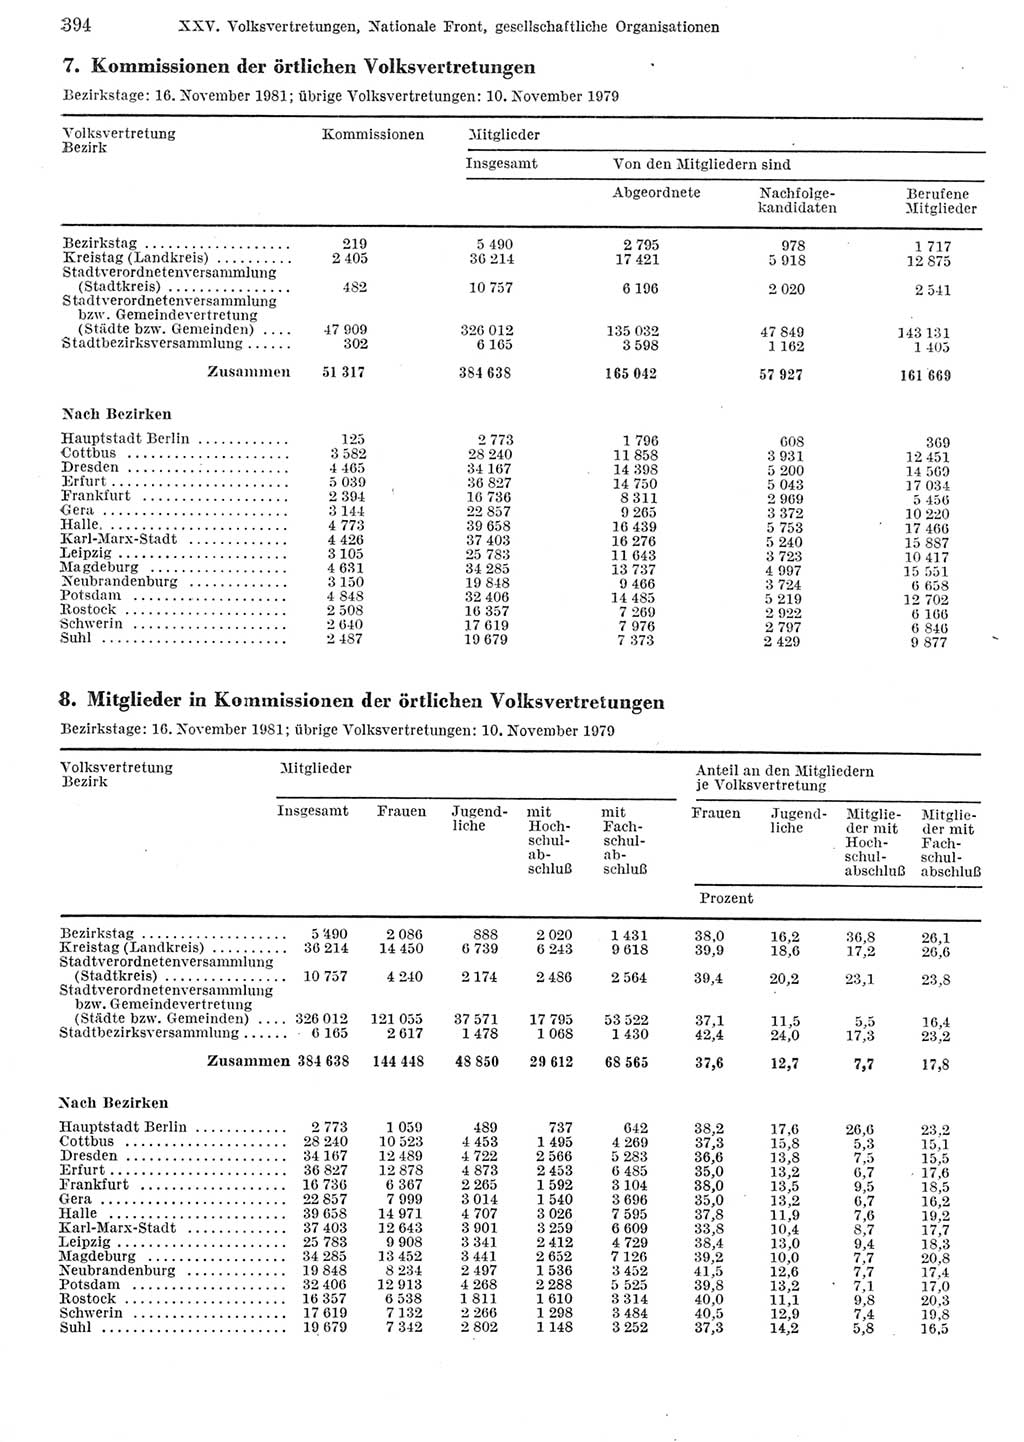 Statistisches Jahrbuch der Deutschen Demokratischen Republik (DDR) 1982, Seite 394 (Stat. Jb. DDR 1982, S. 394)